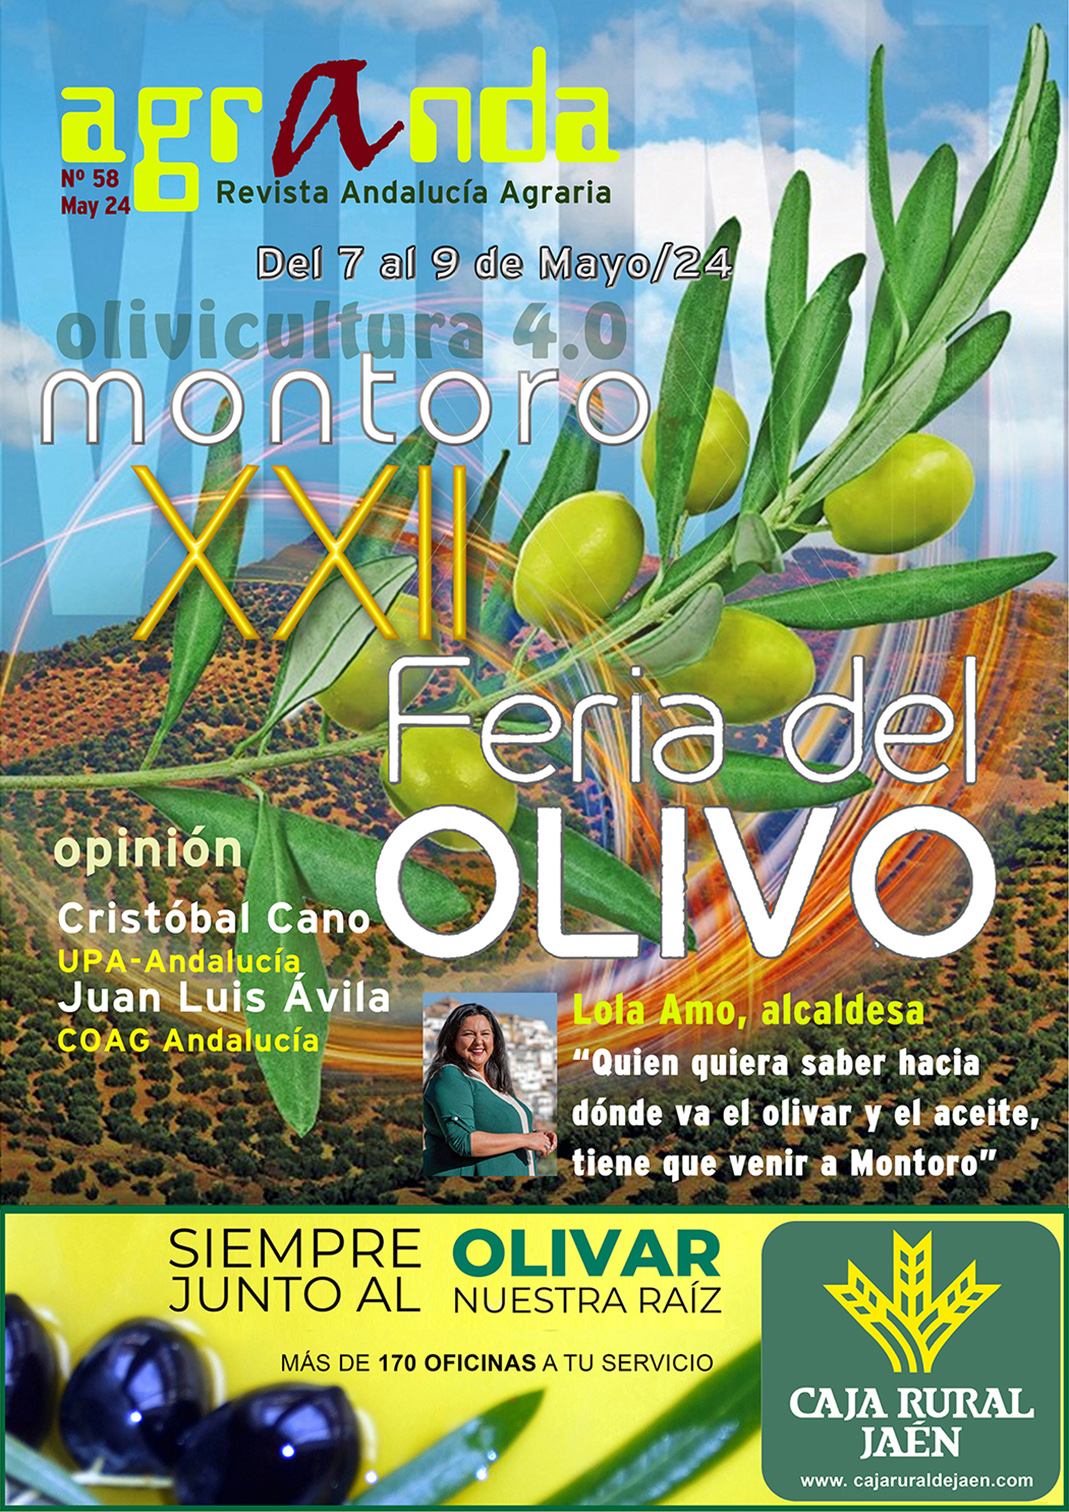 El último número de la revista Andalucía Agraria –AGRANDA- presente en la XXII Feria del Olivo de la localidad de Montoro